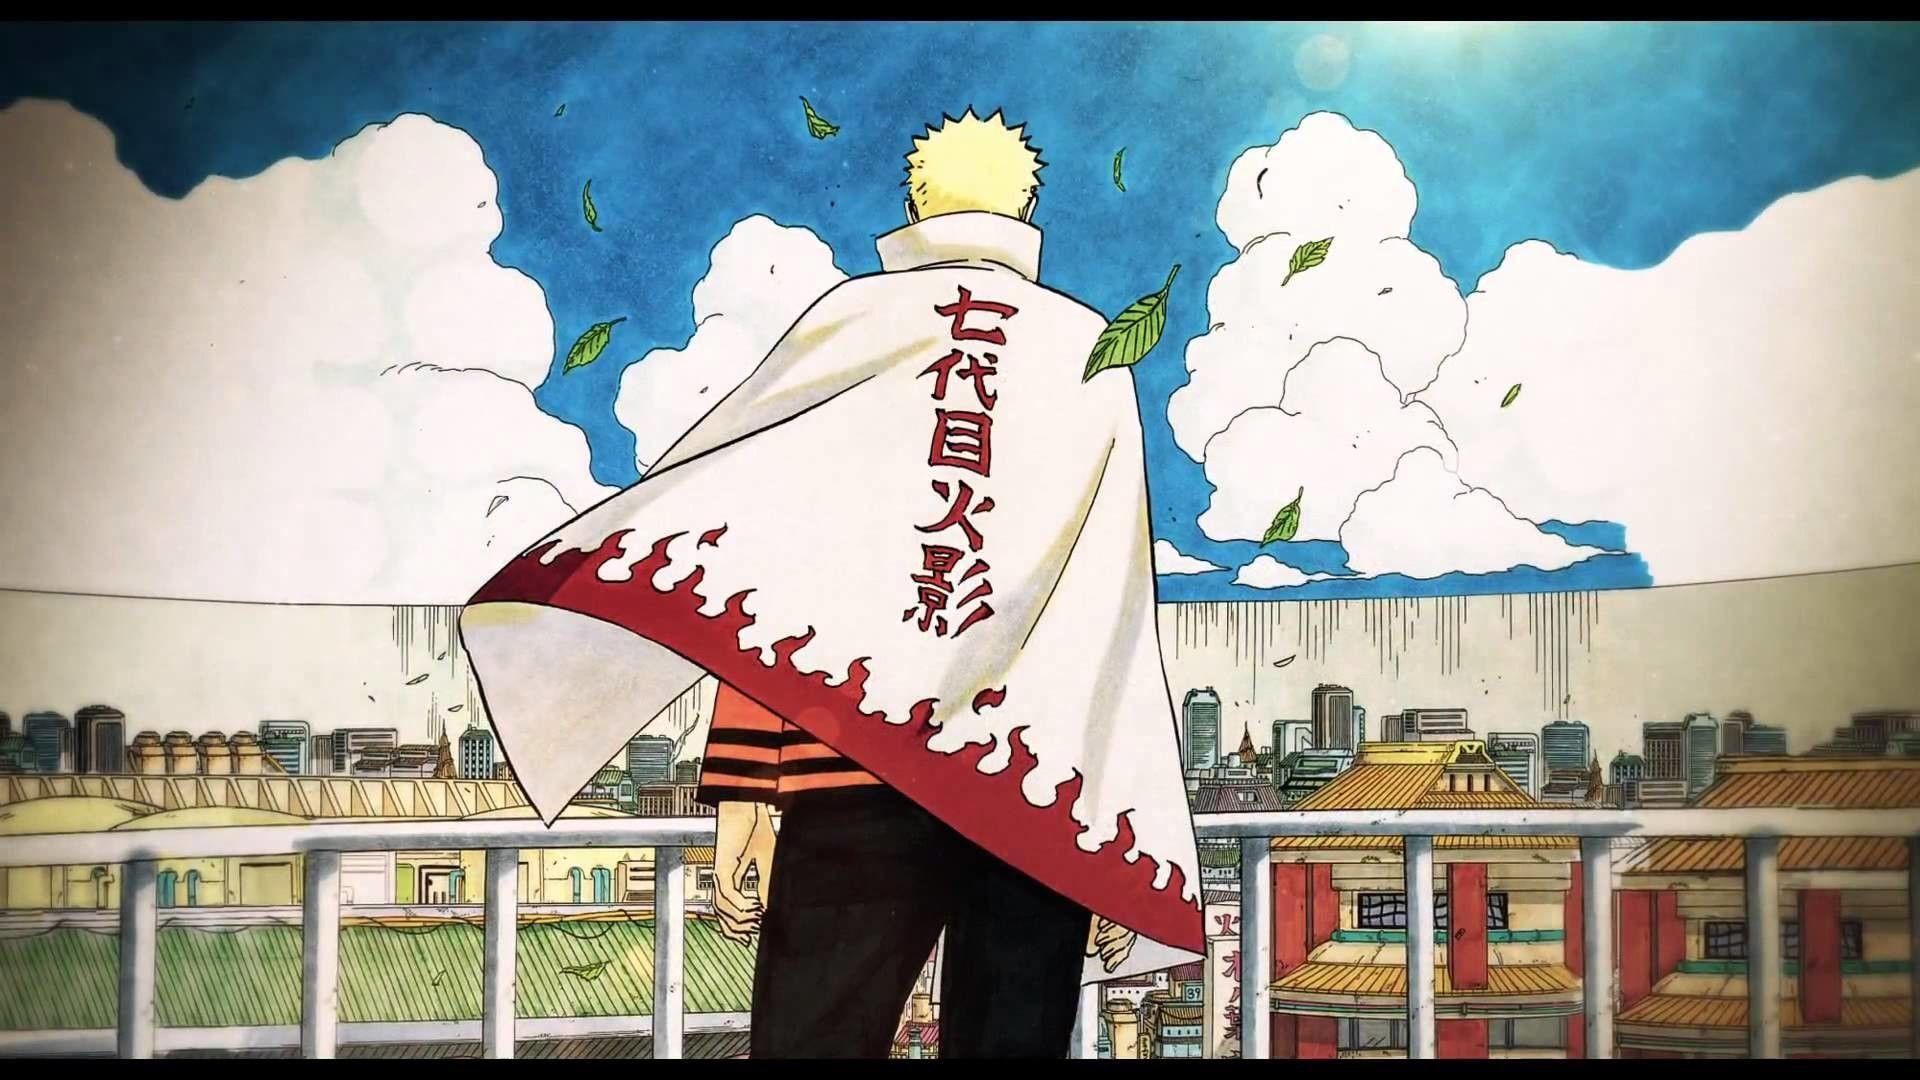 100+] Naruto Hokage Wallpapers